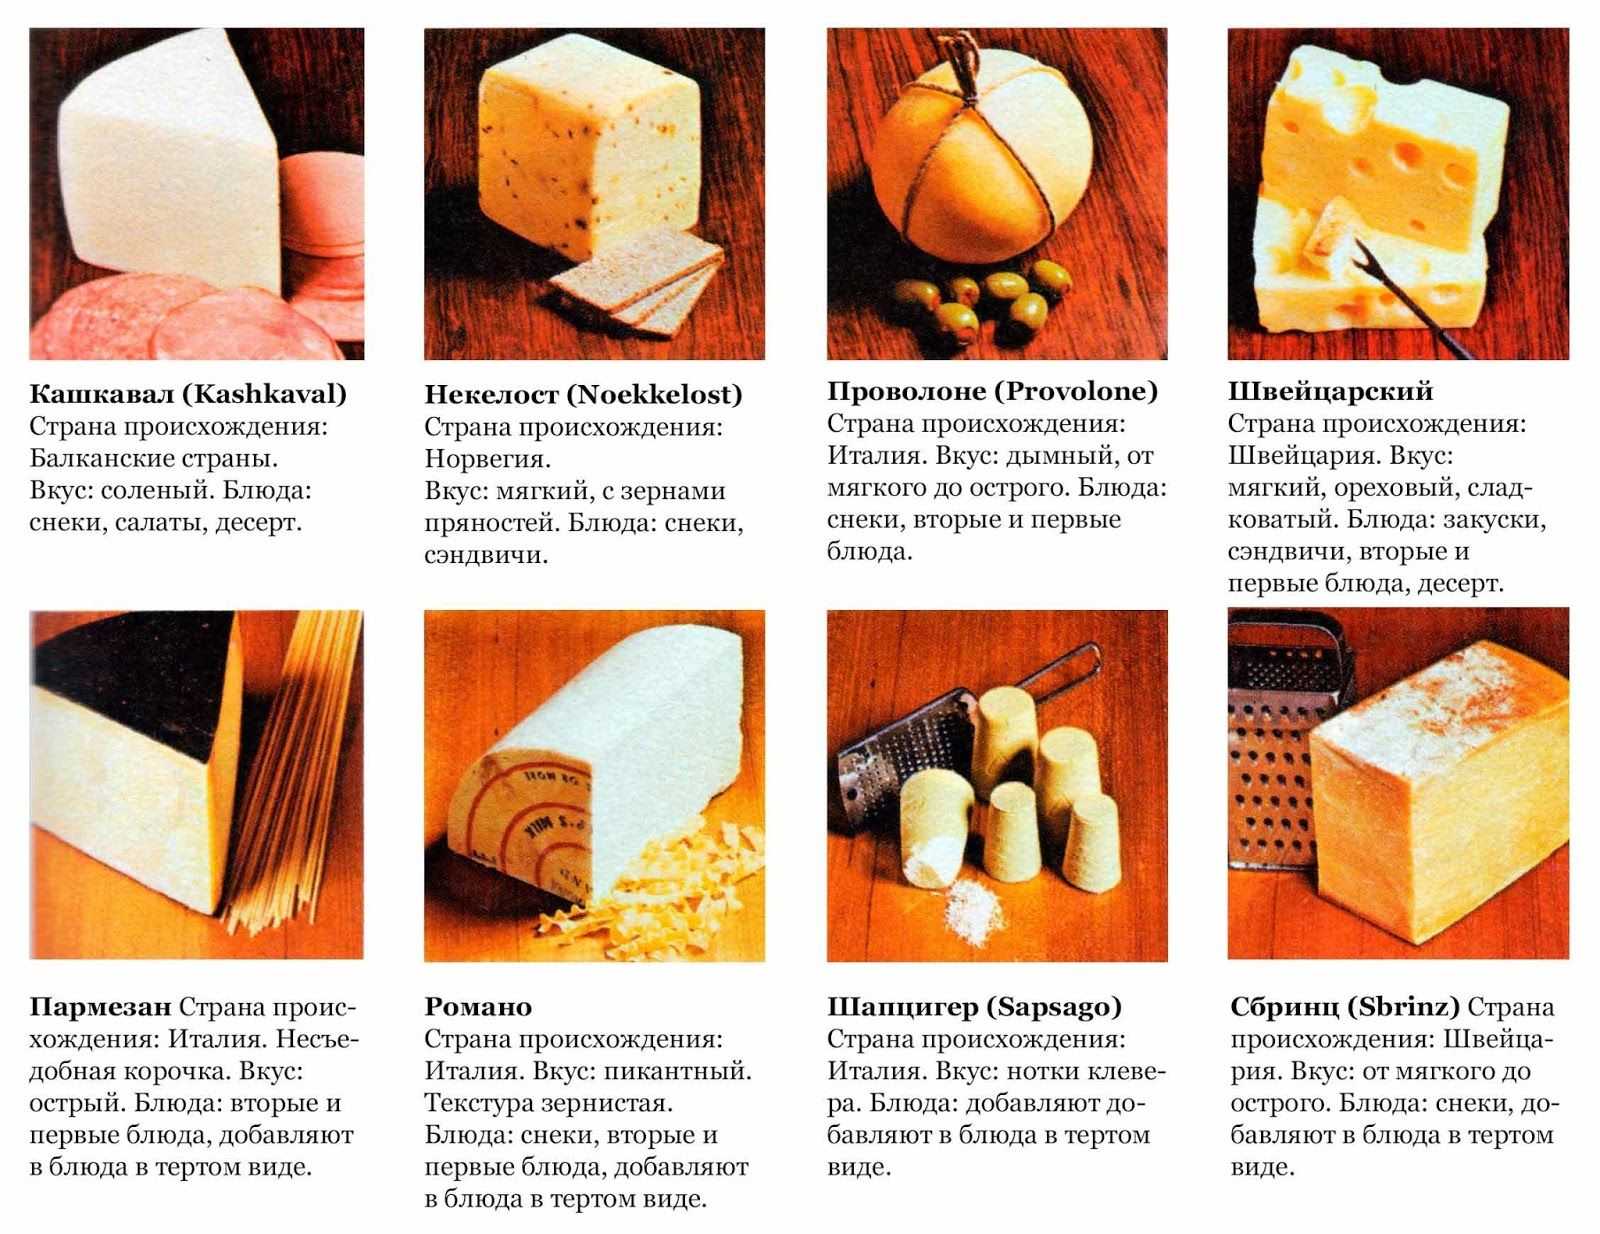 Самые вкусные сыры. рейтинг самых известных сортов. какой самый вкусный сыр в мире?